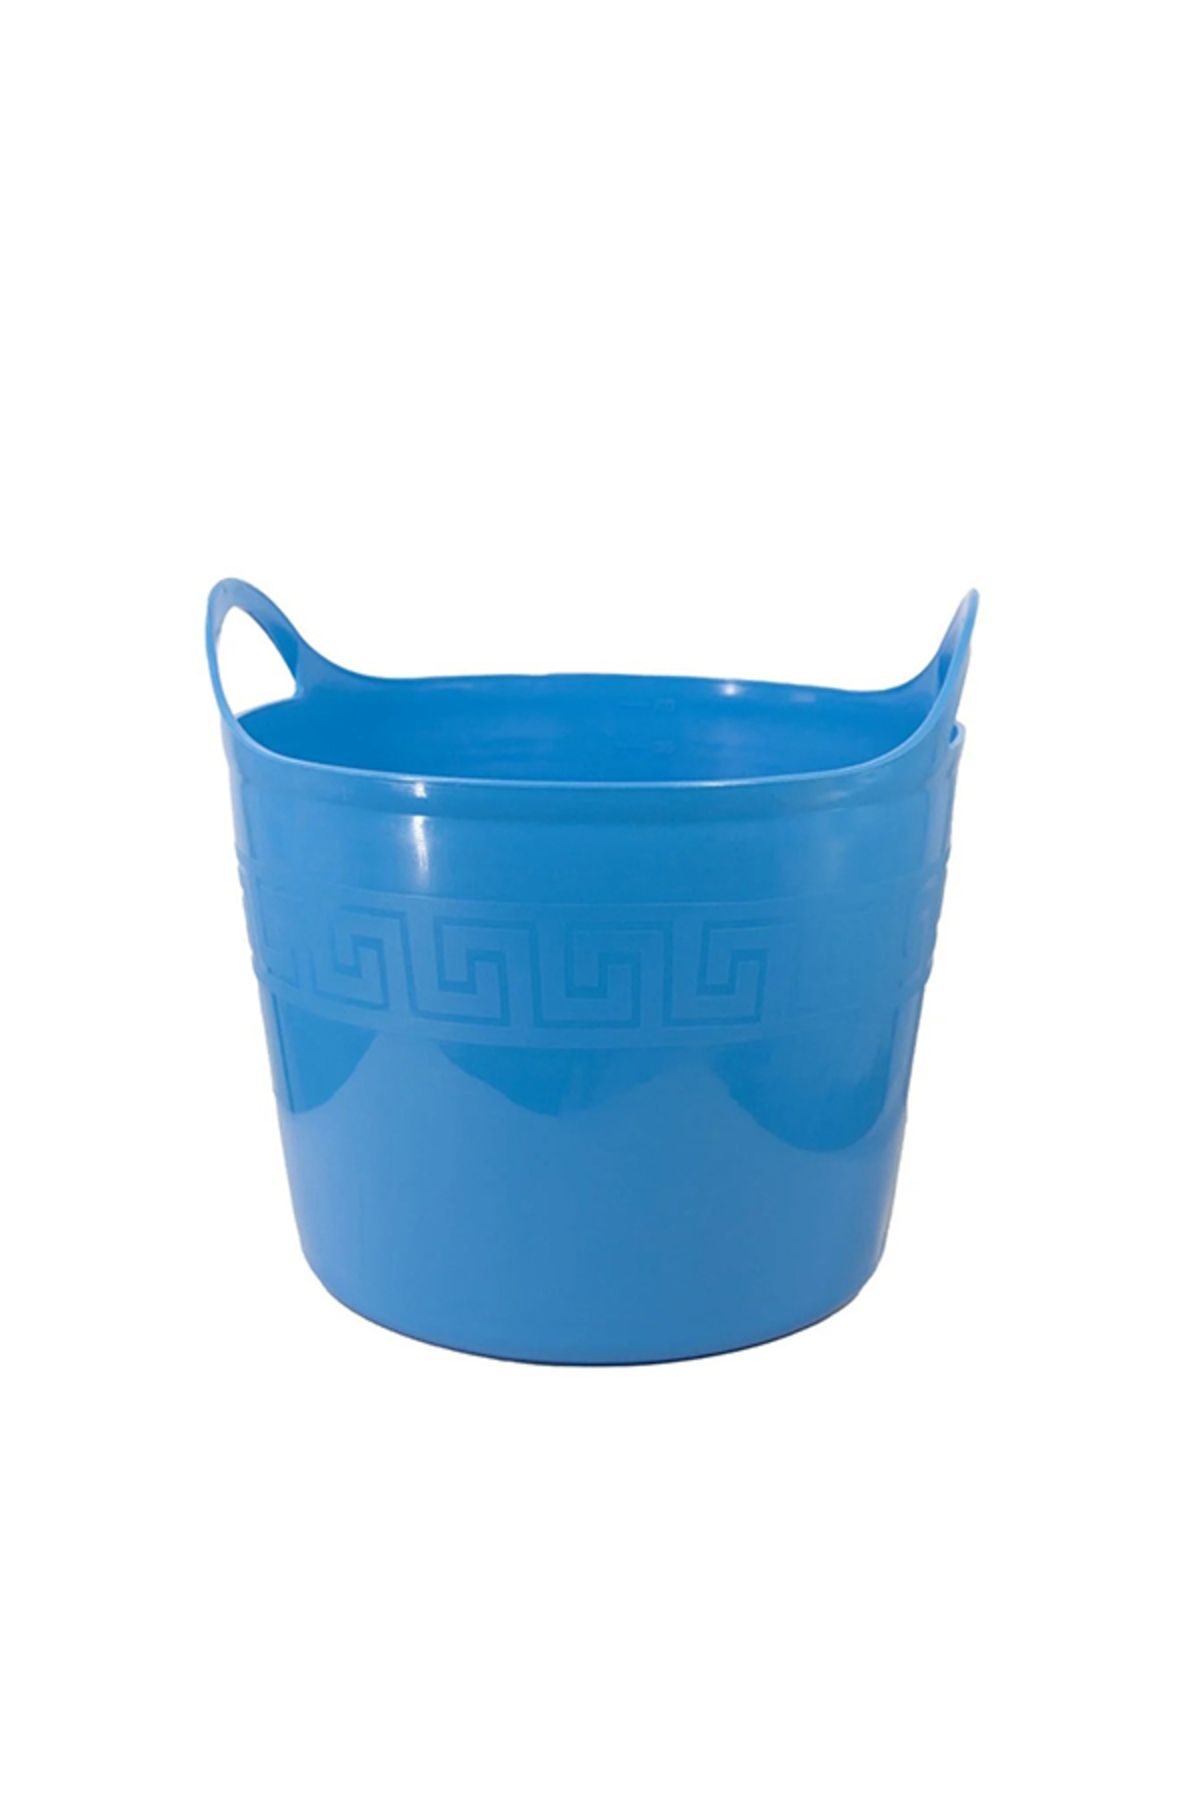 Saban Çok Amaçlı Esnek Kırılmaz Kova 42 Lt + Poşetlik / Multi-Purpose Flexible Unbreakable Bucket